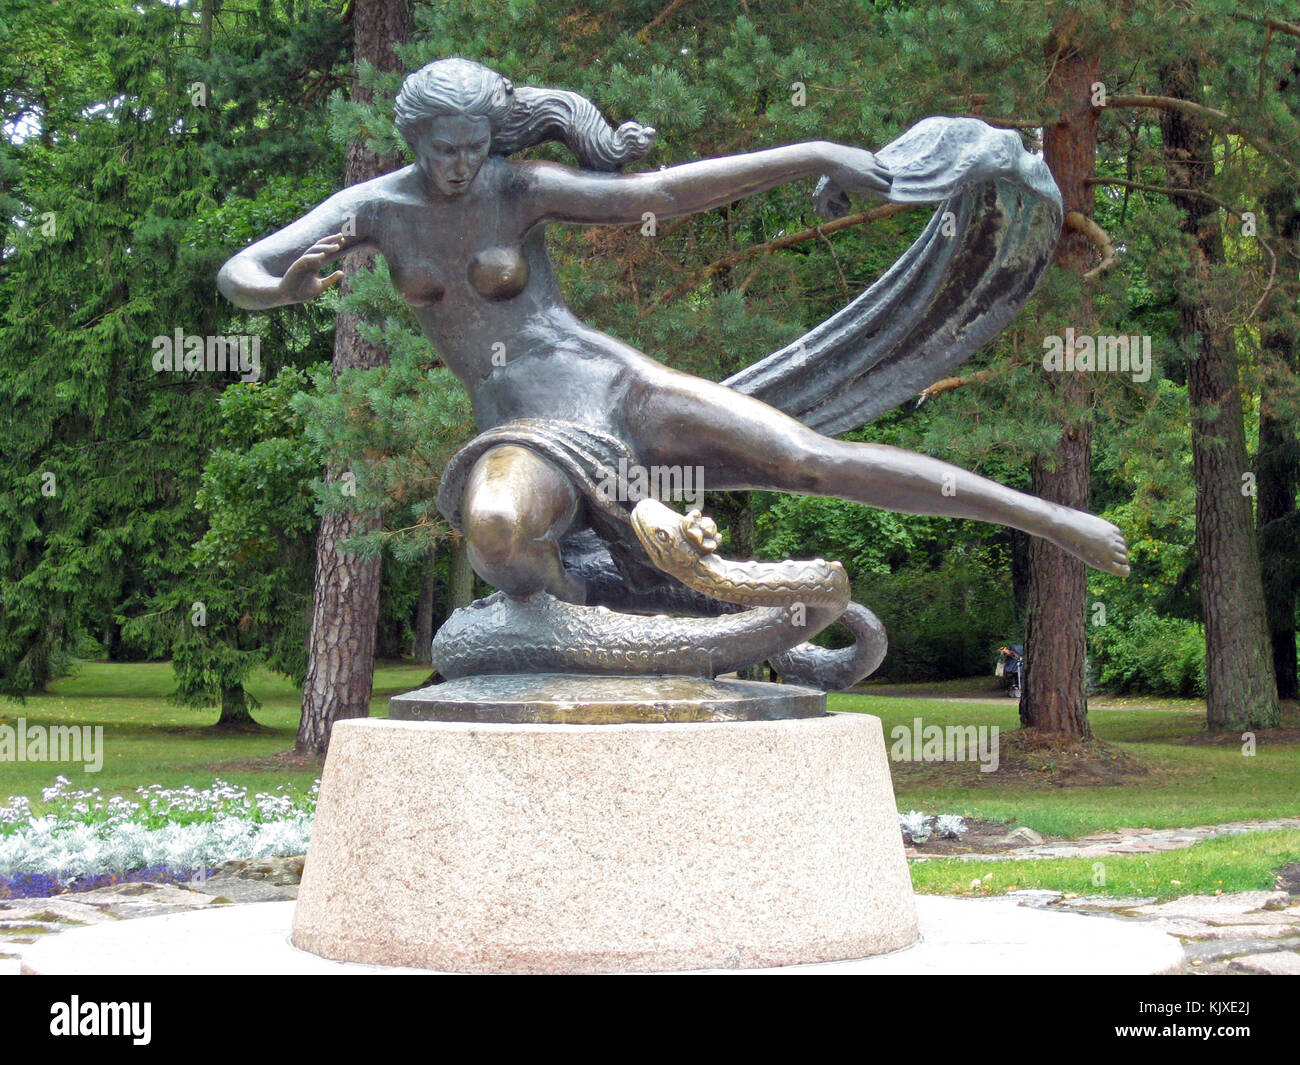 Palanga, Lituania - Agosto 12, 2009: la estatua de bronce de la mujer y la serpiente está situado en el parque municipal. Foto de stock